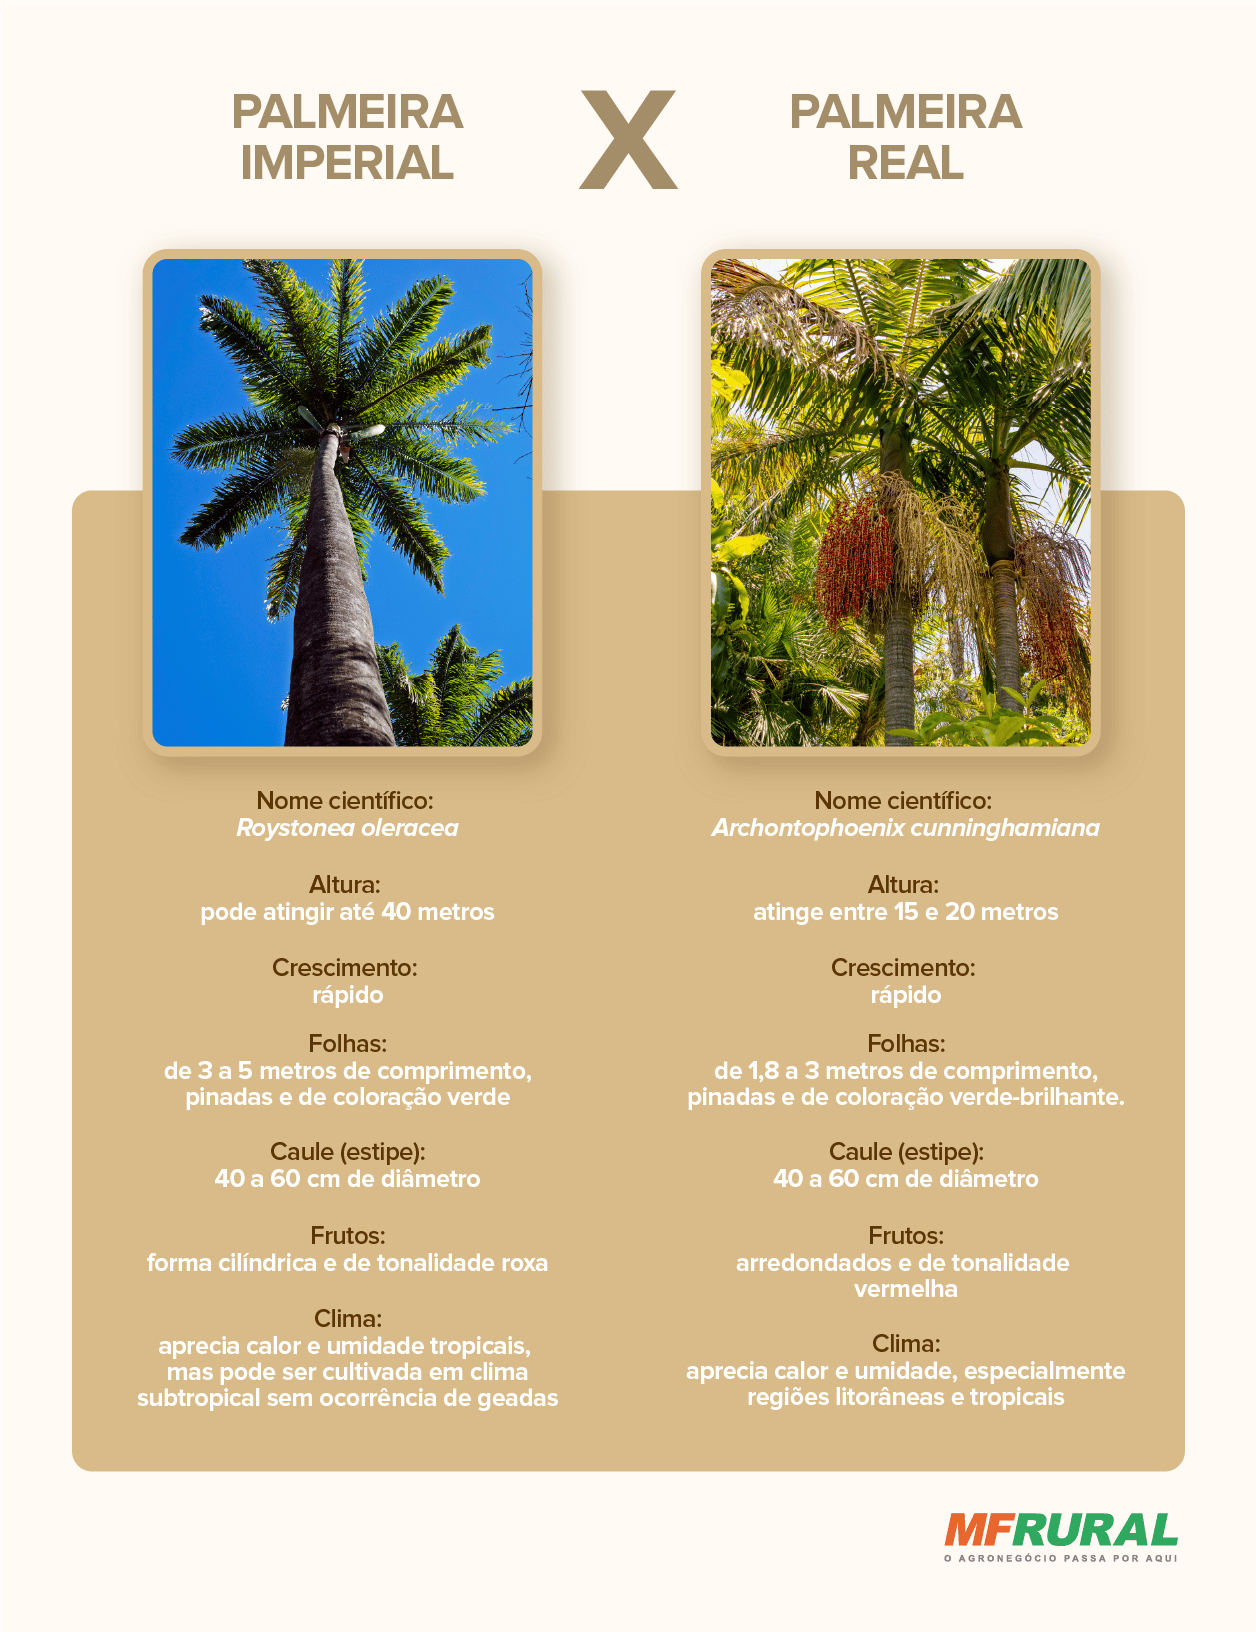 Comparativo entre as palmeiras imperial e real, destacando suas diferentes características